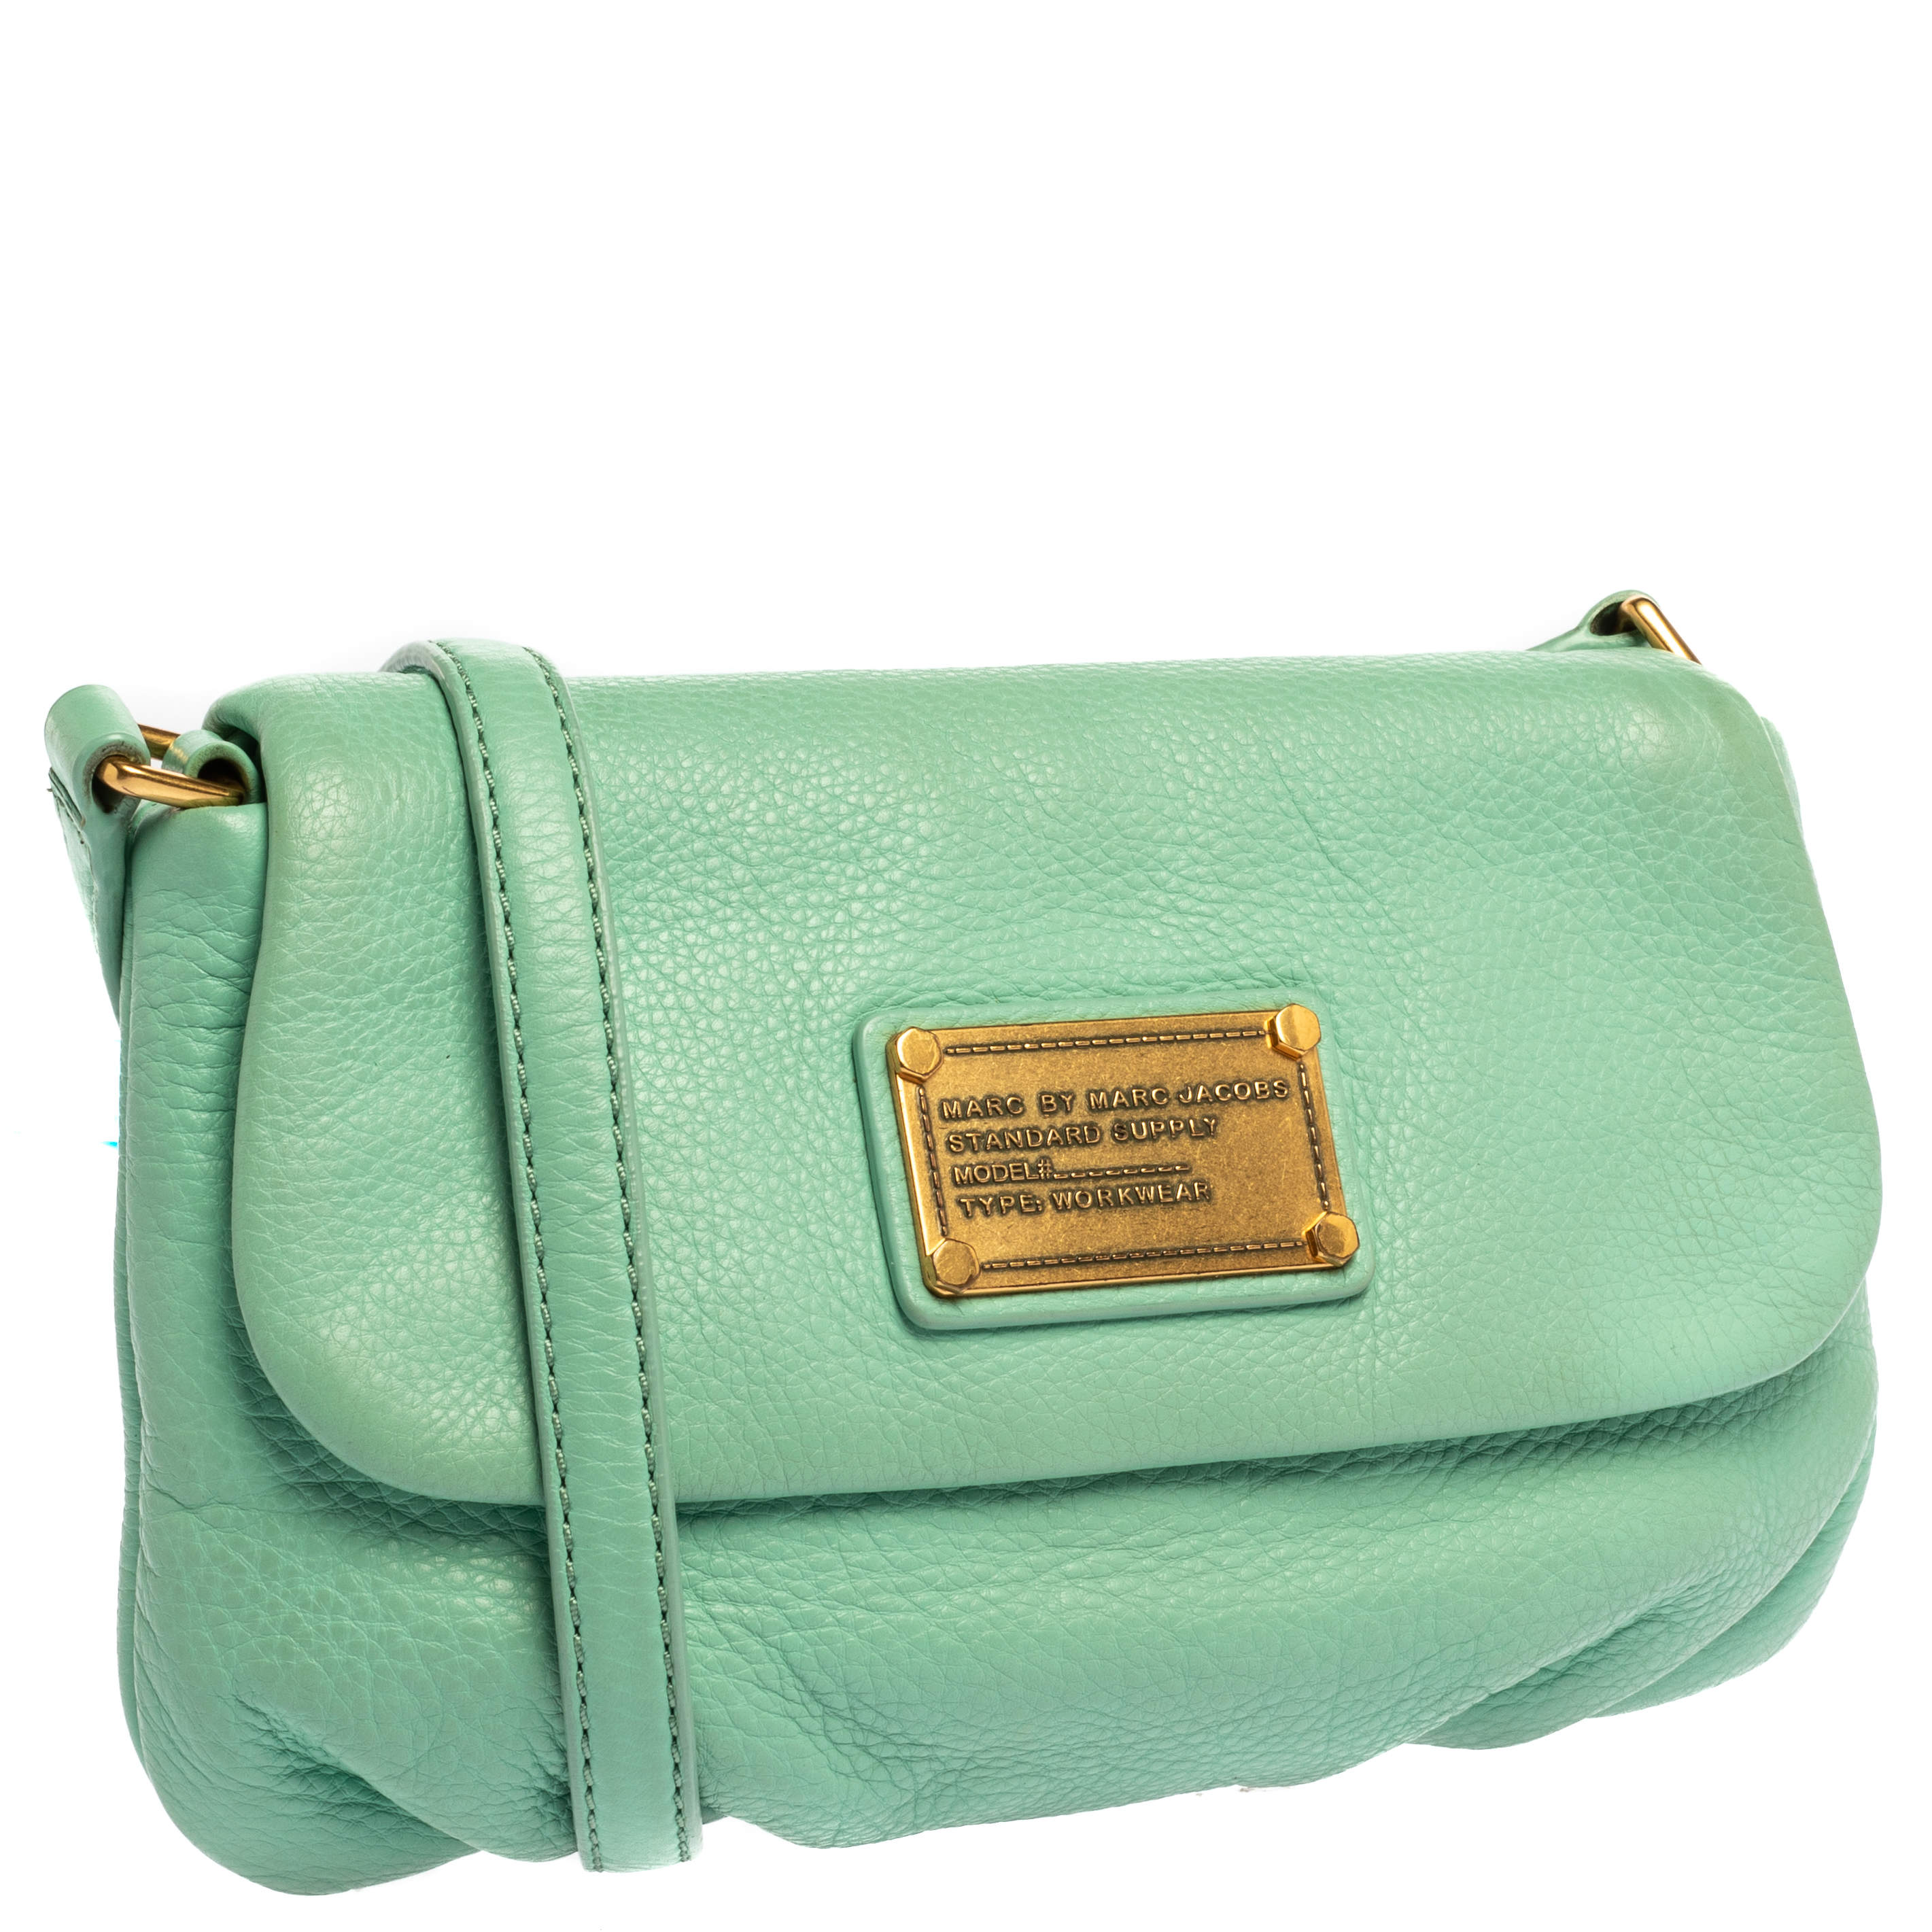 Snapshot Mint Leather Shoulder Bag In Green/multicolor